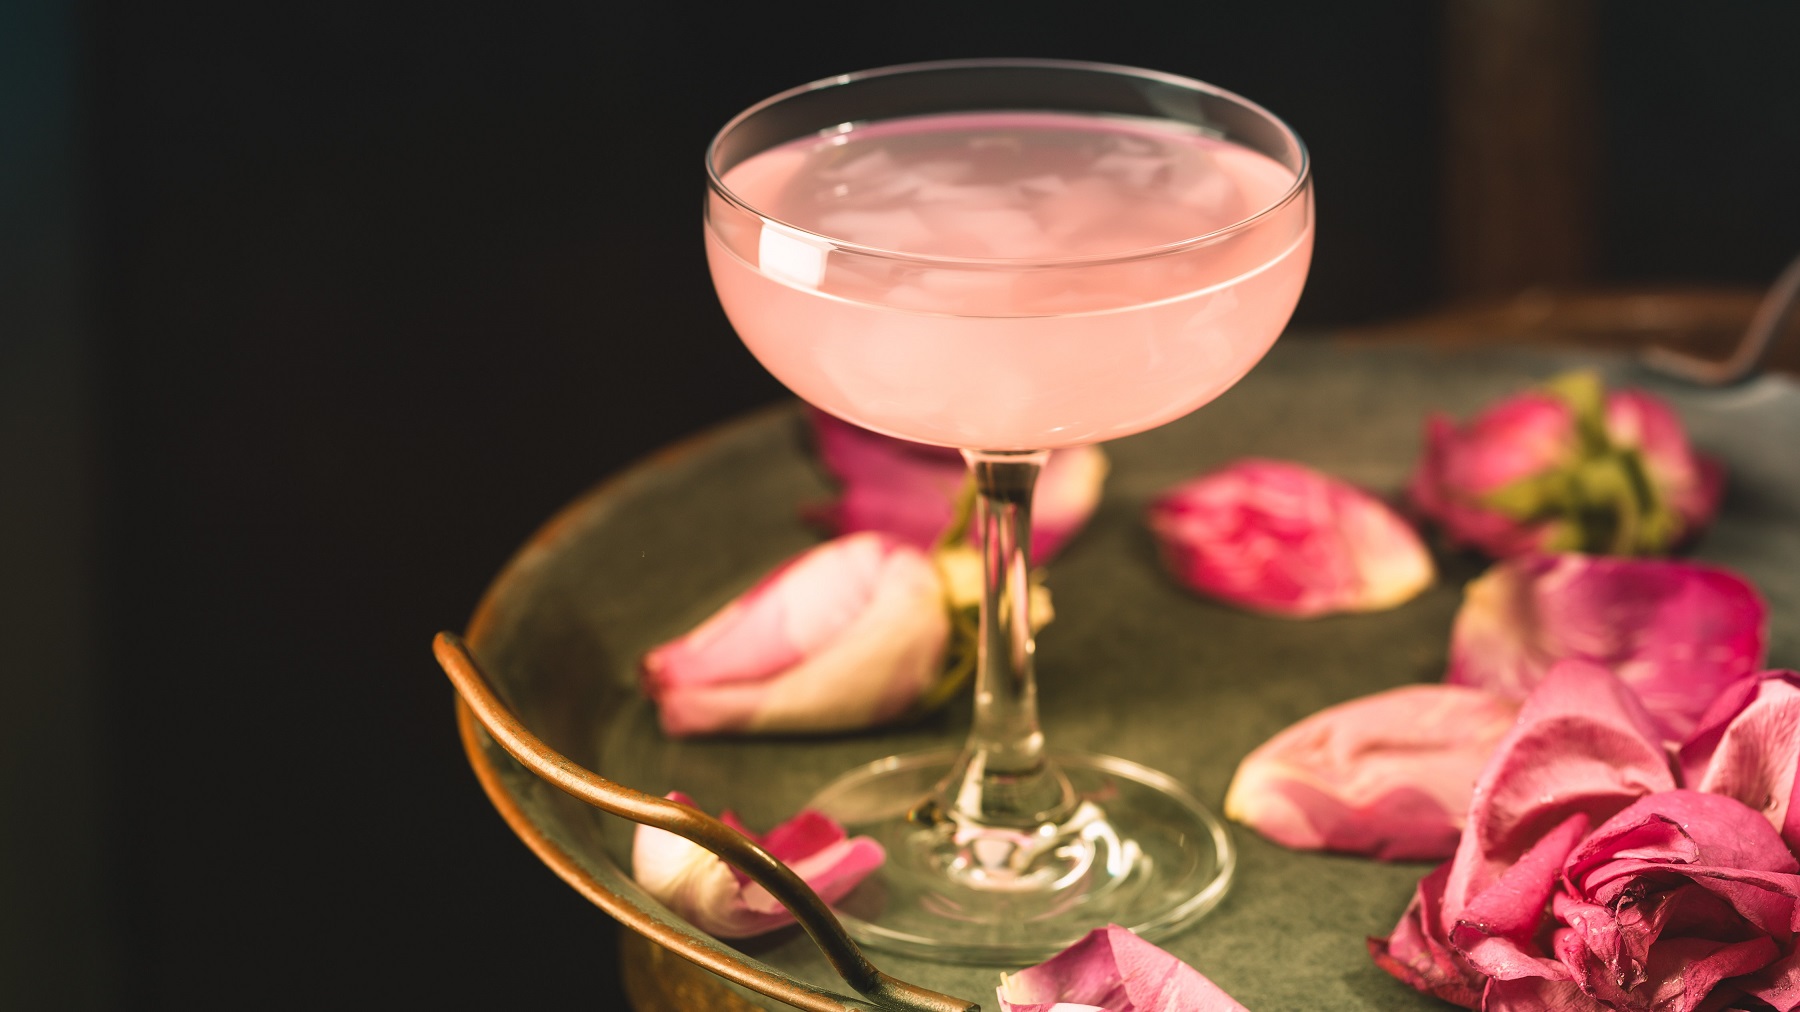 Cocktail mit Prosecco, schwarzen Tee und Rosengelee auf einem goldenen Tisch mit Rosenblättern